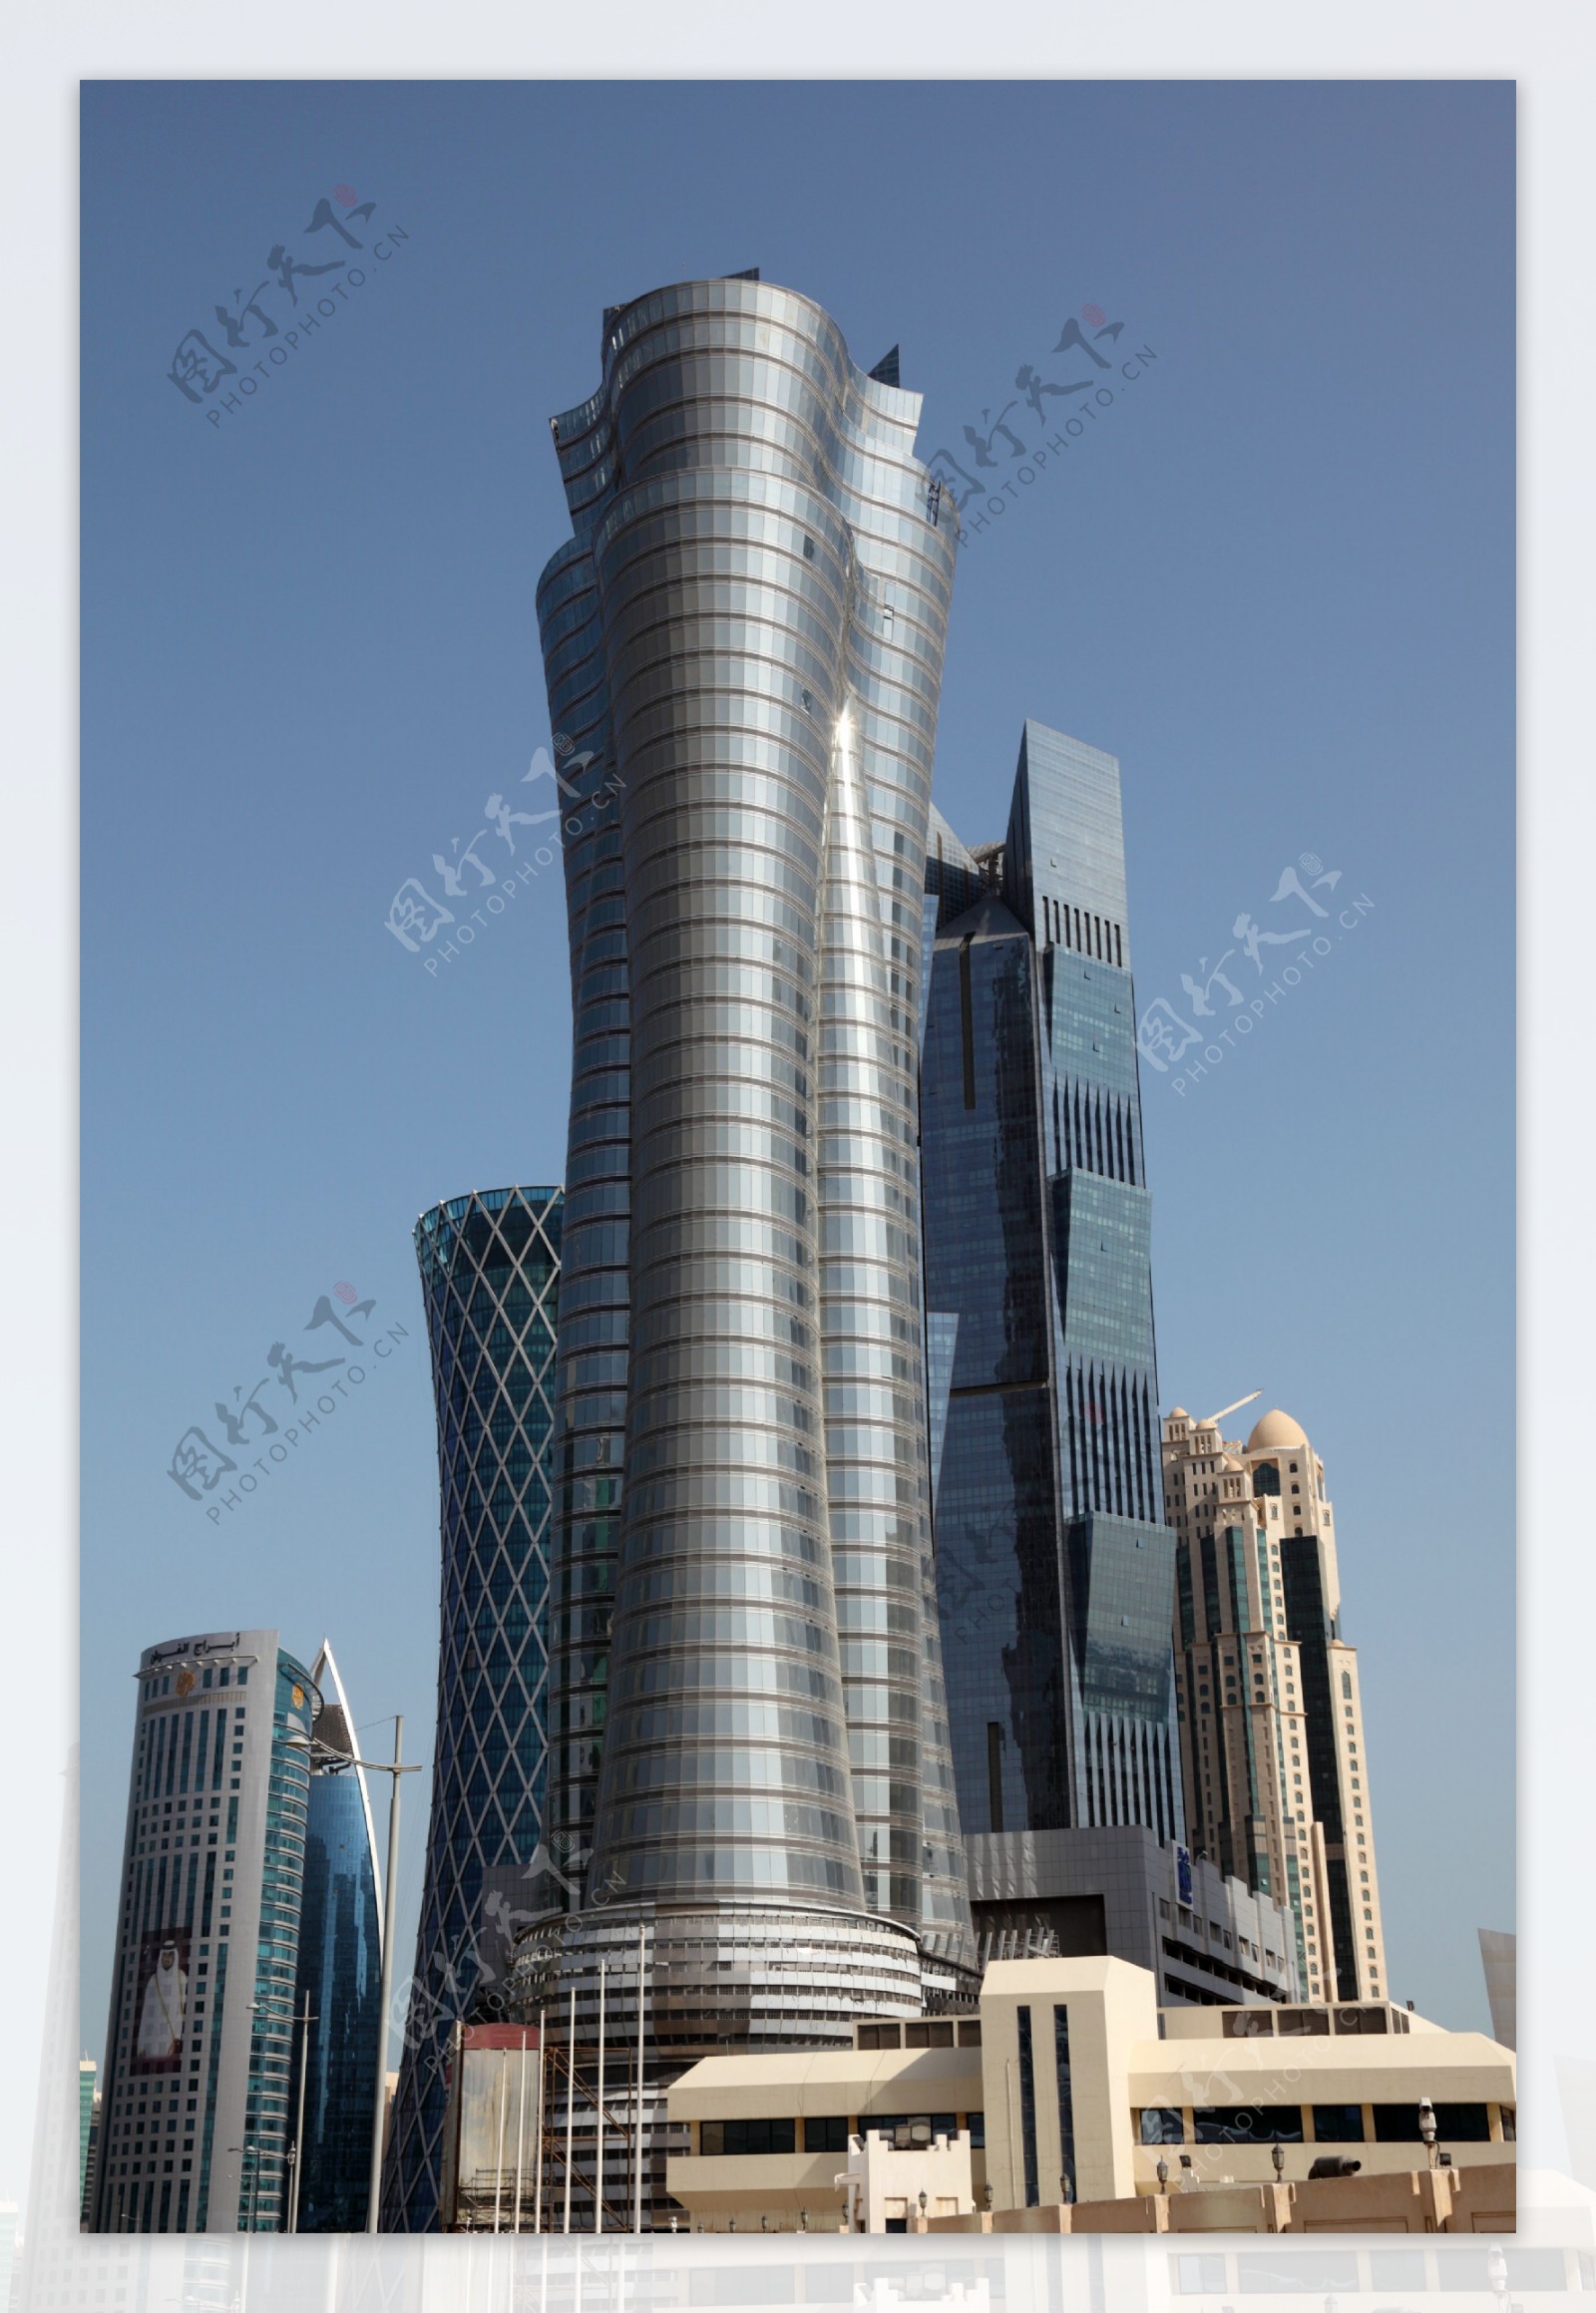 圆形高楼建筑物图片